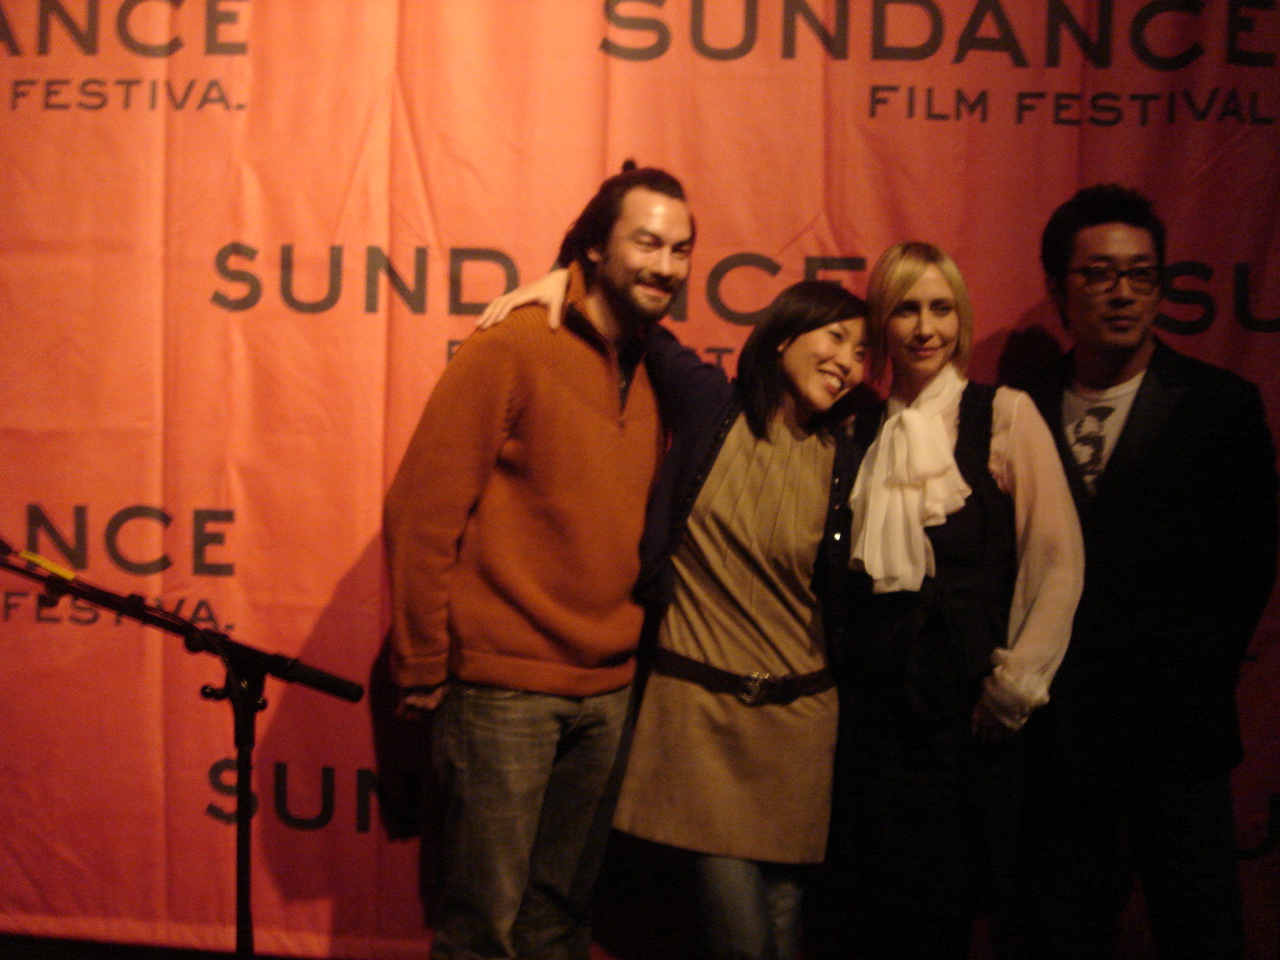  Sundance Film Festival with cast of  Never Forever  